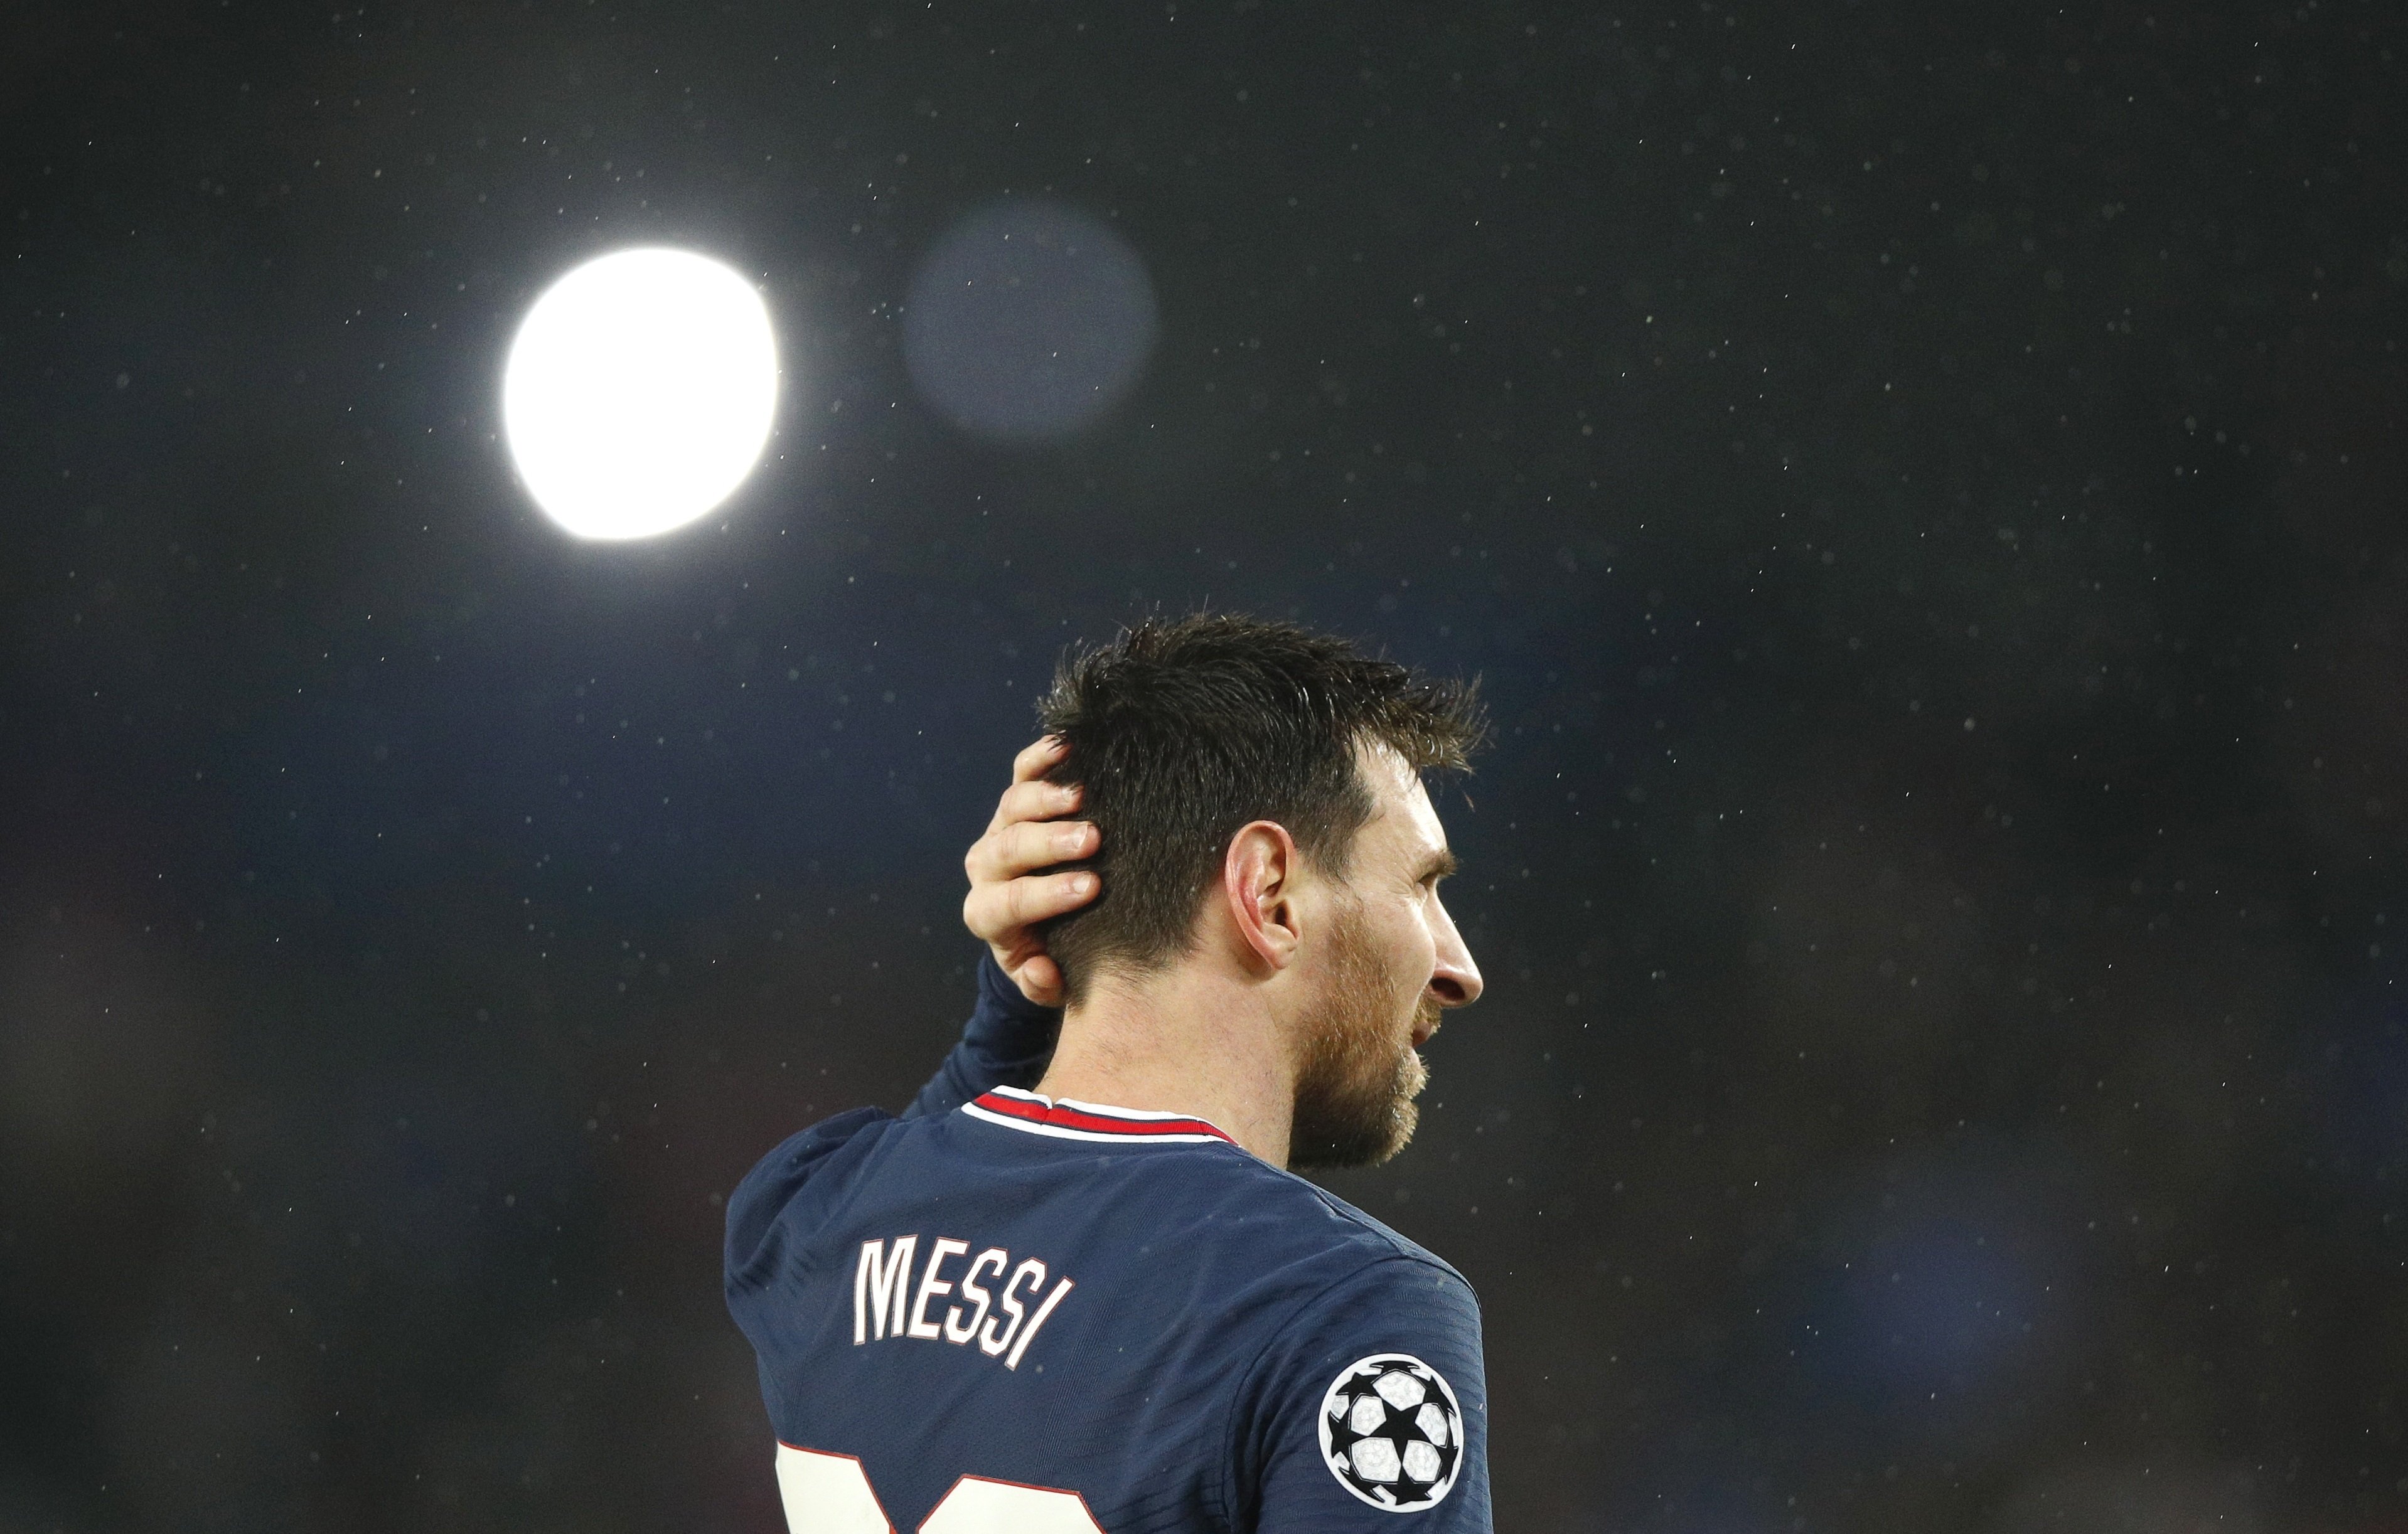 Video demoledor de Messi con la afición del PSG que confirma las sospechas: camino de ser 'trending topic'